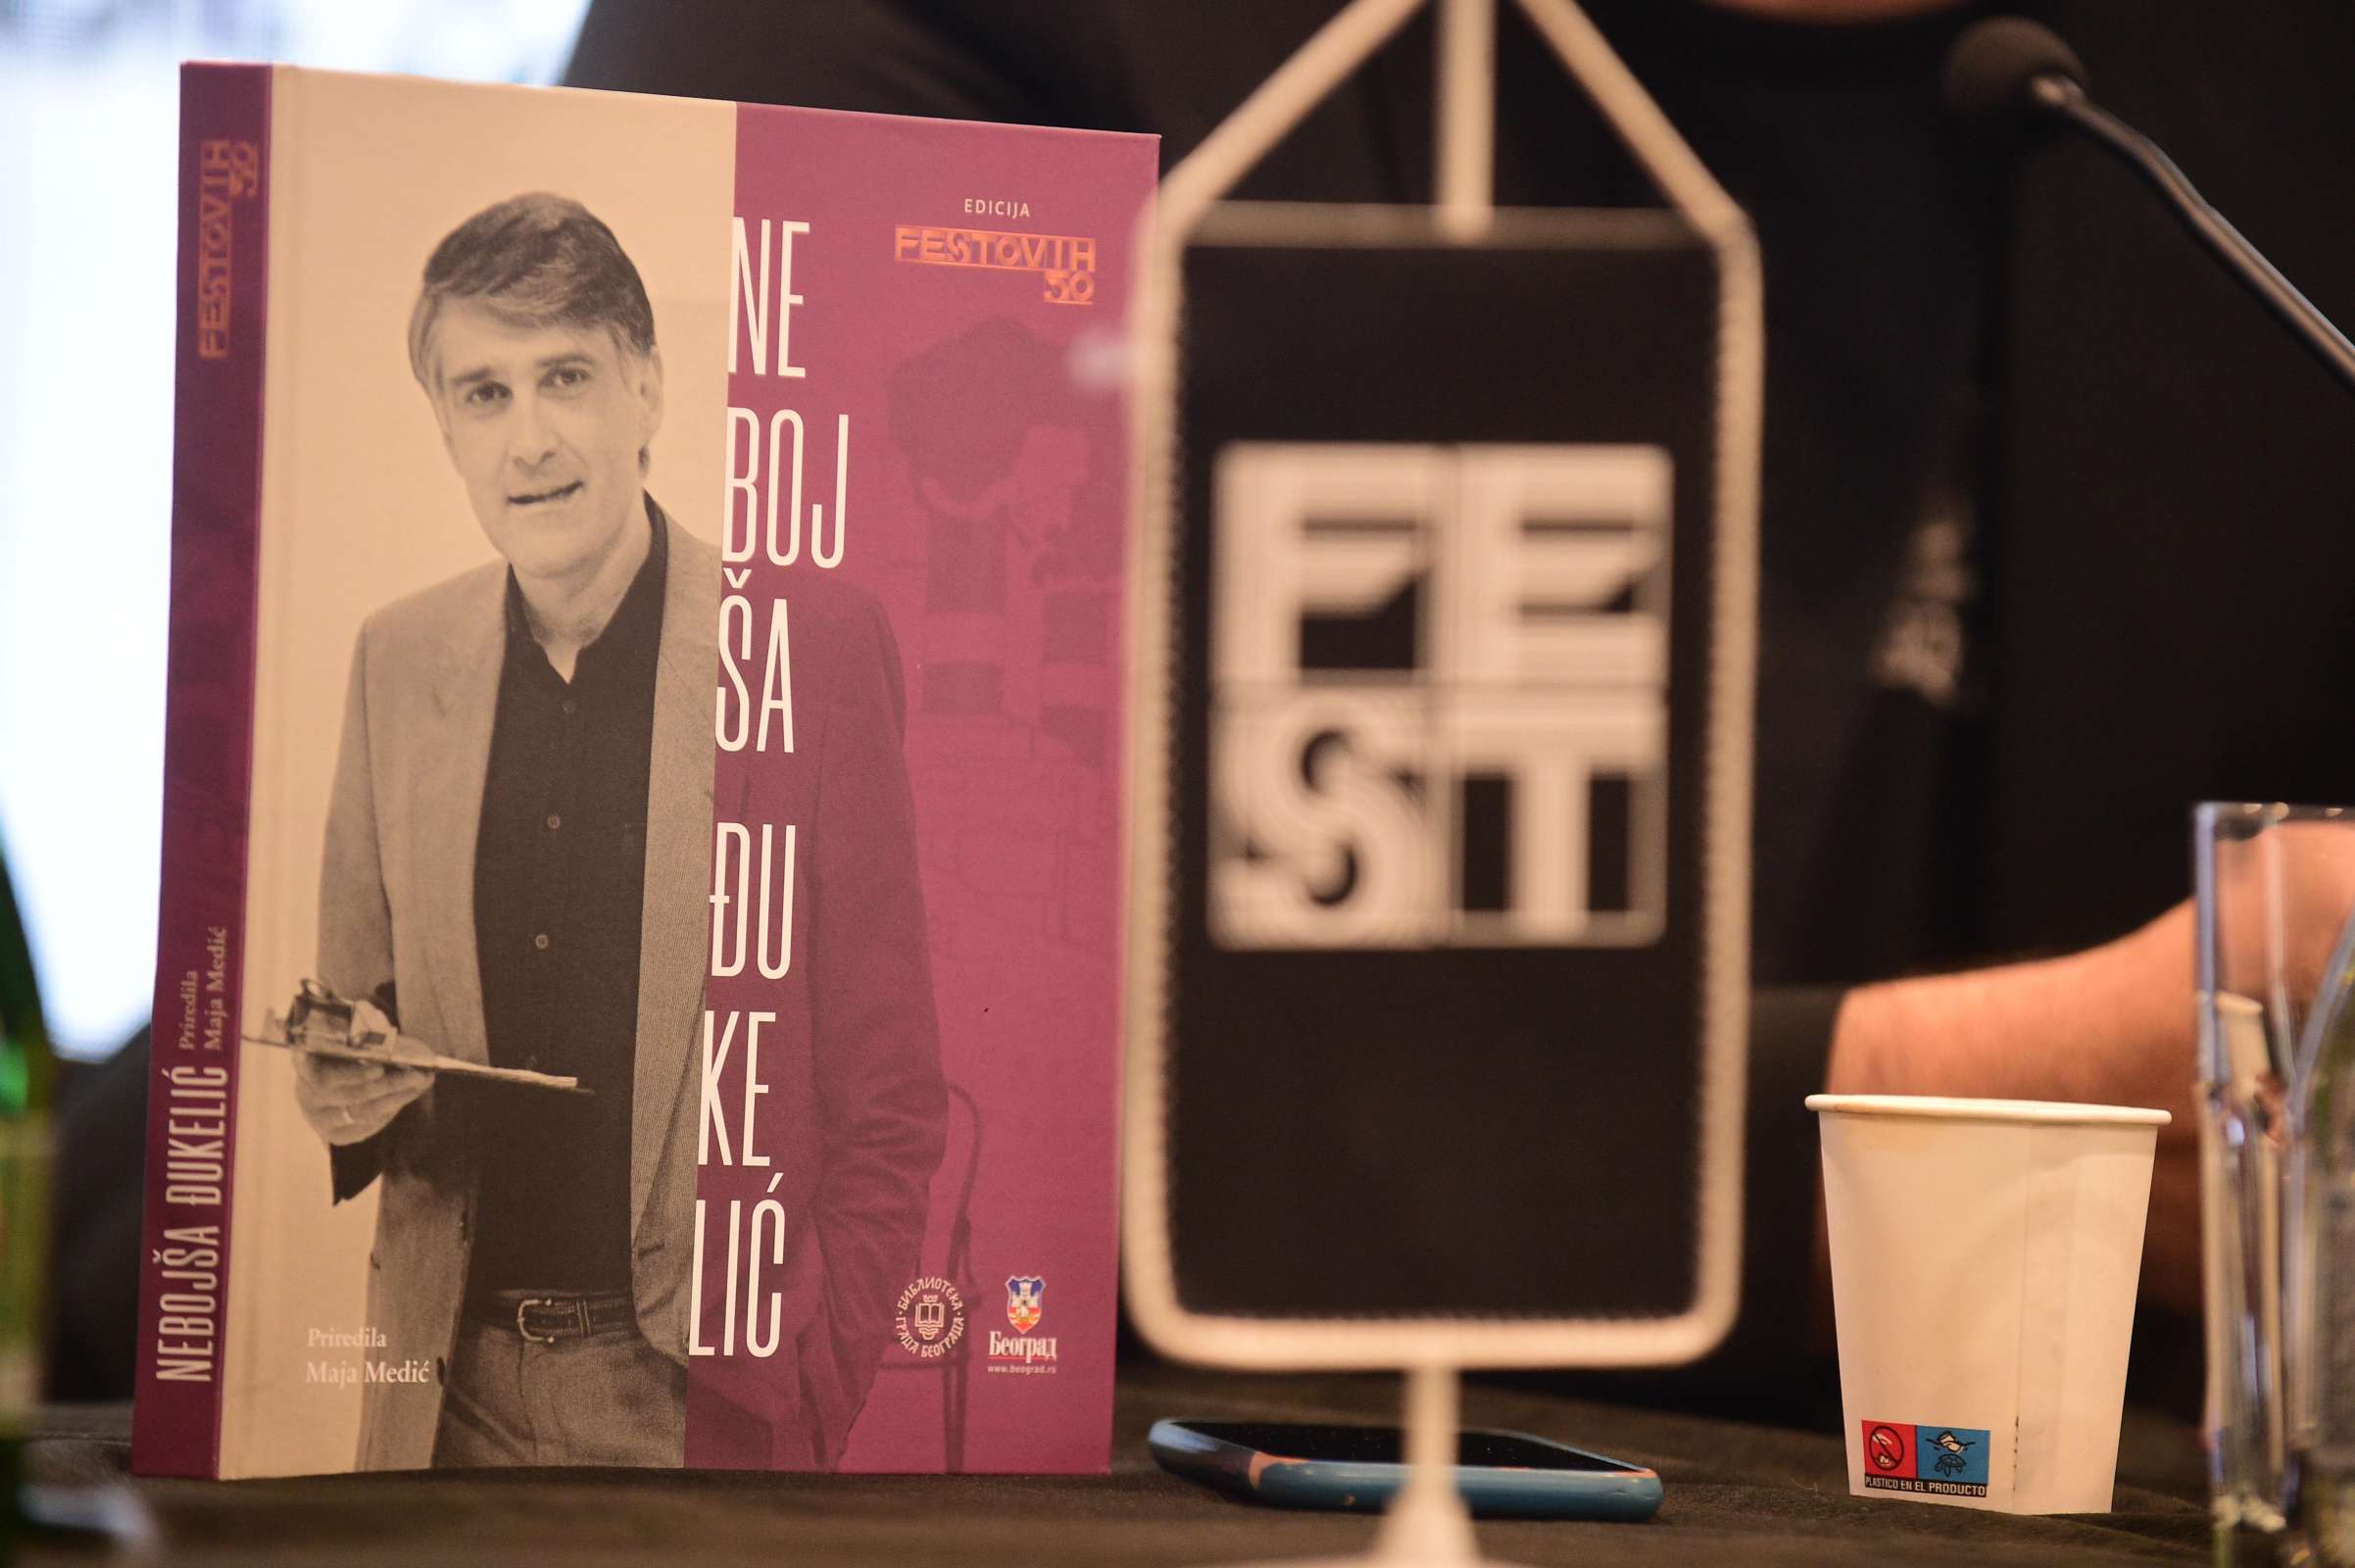 Predstavljena knjiga “Nebojša Đukelić“ iz edicije Festovih 50